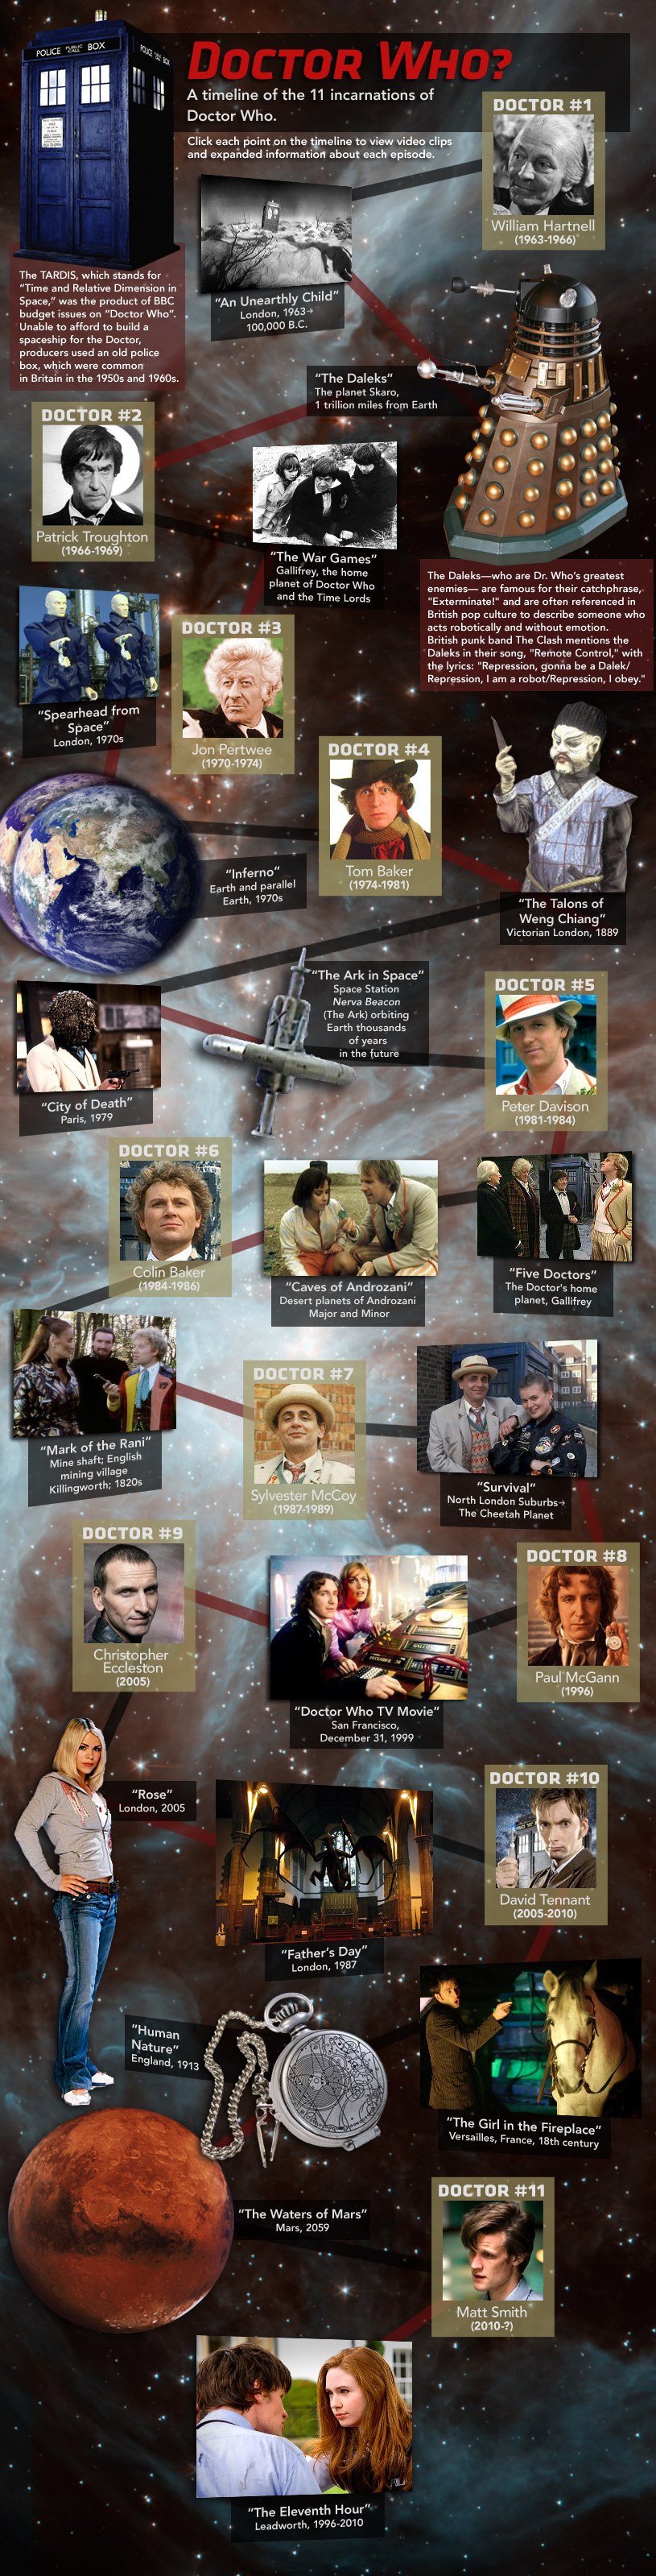 Historique des 11 incarnations de Docteur Who